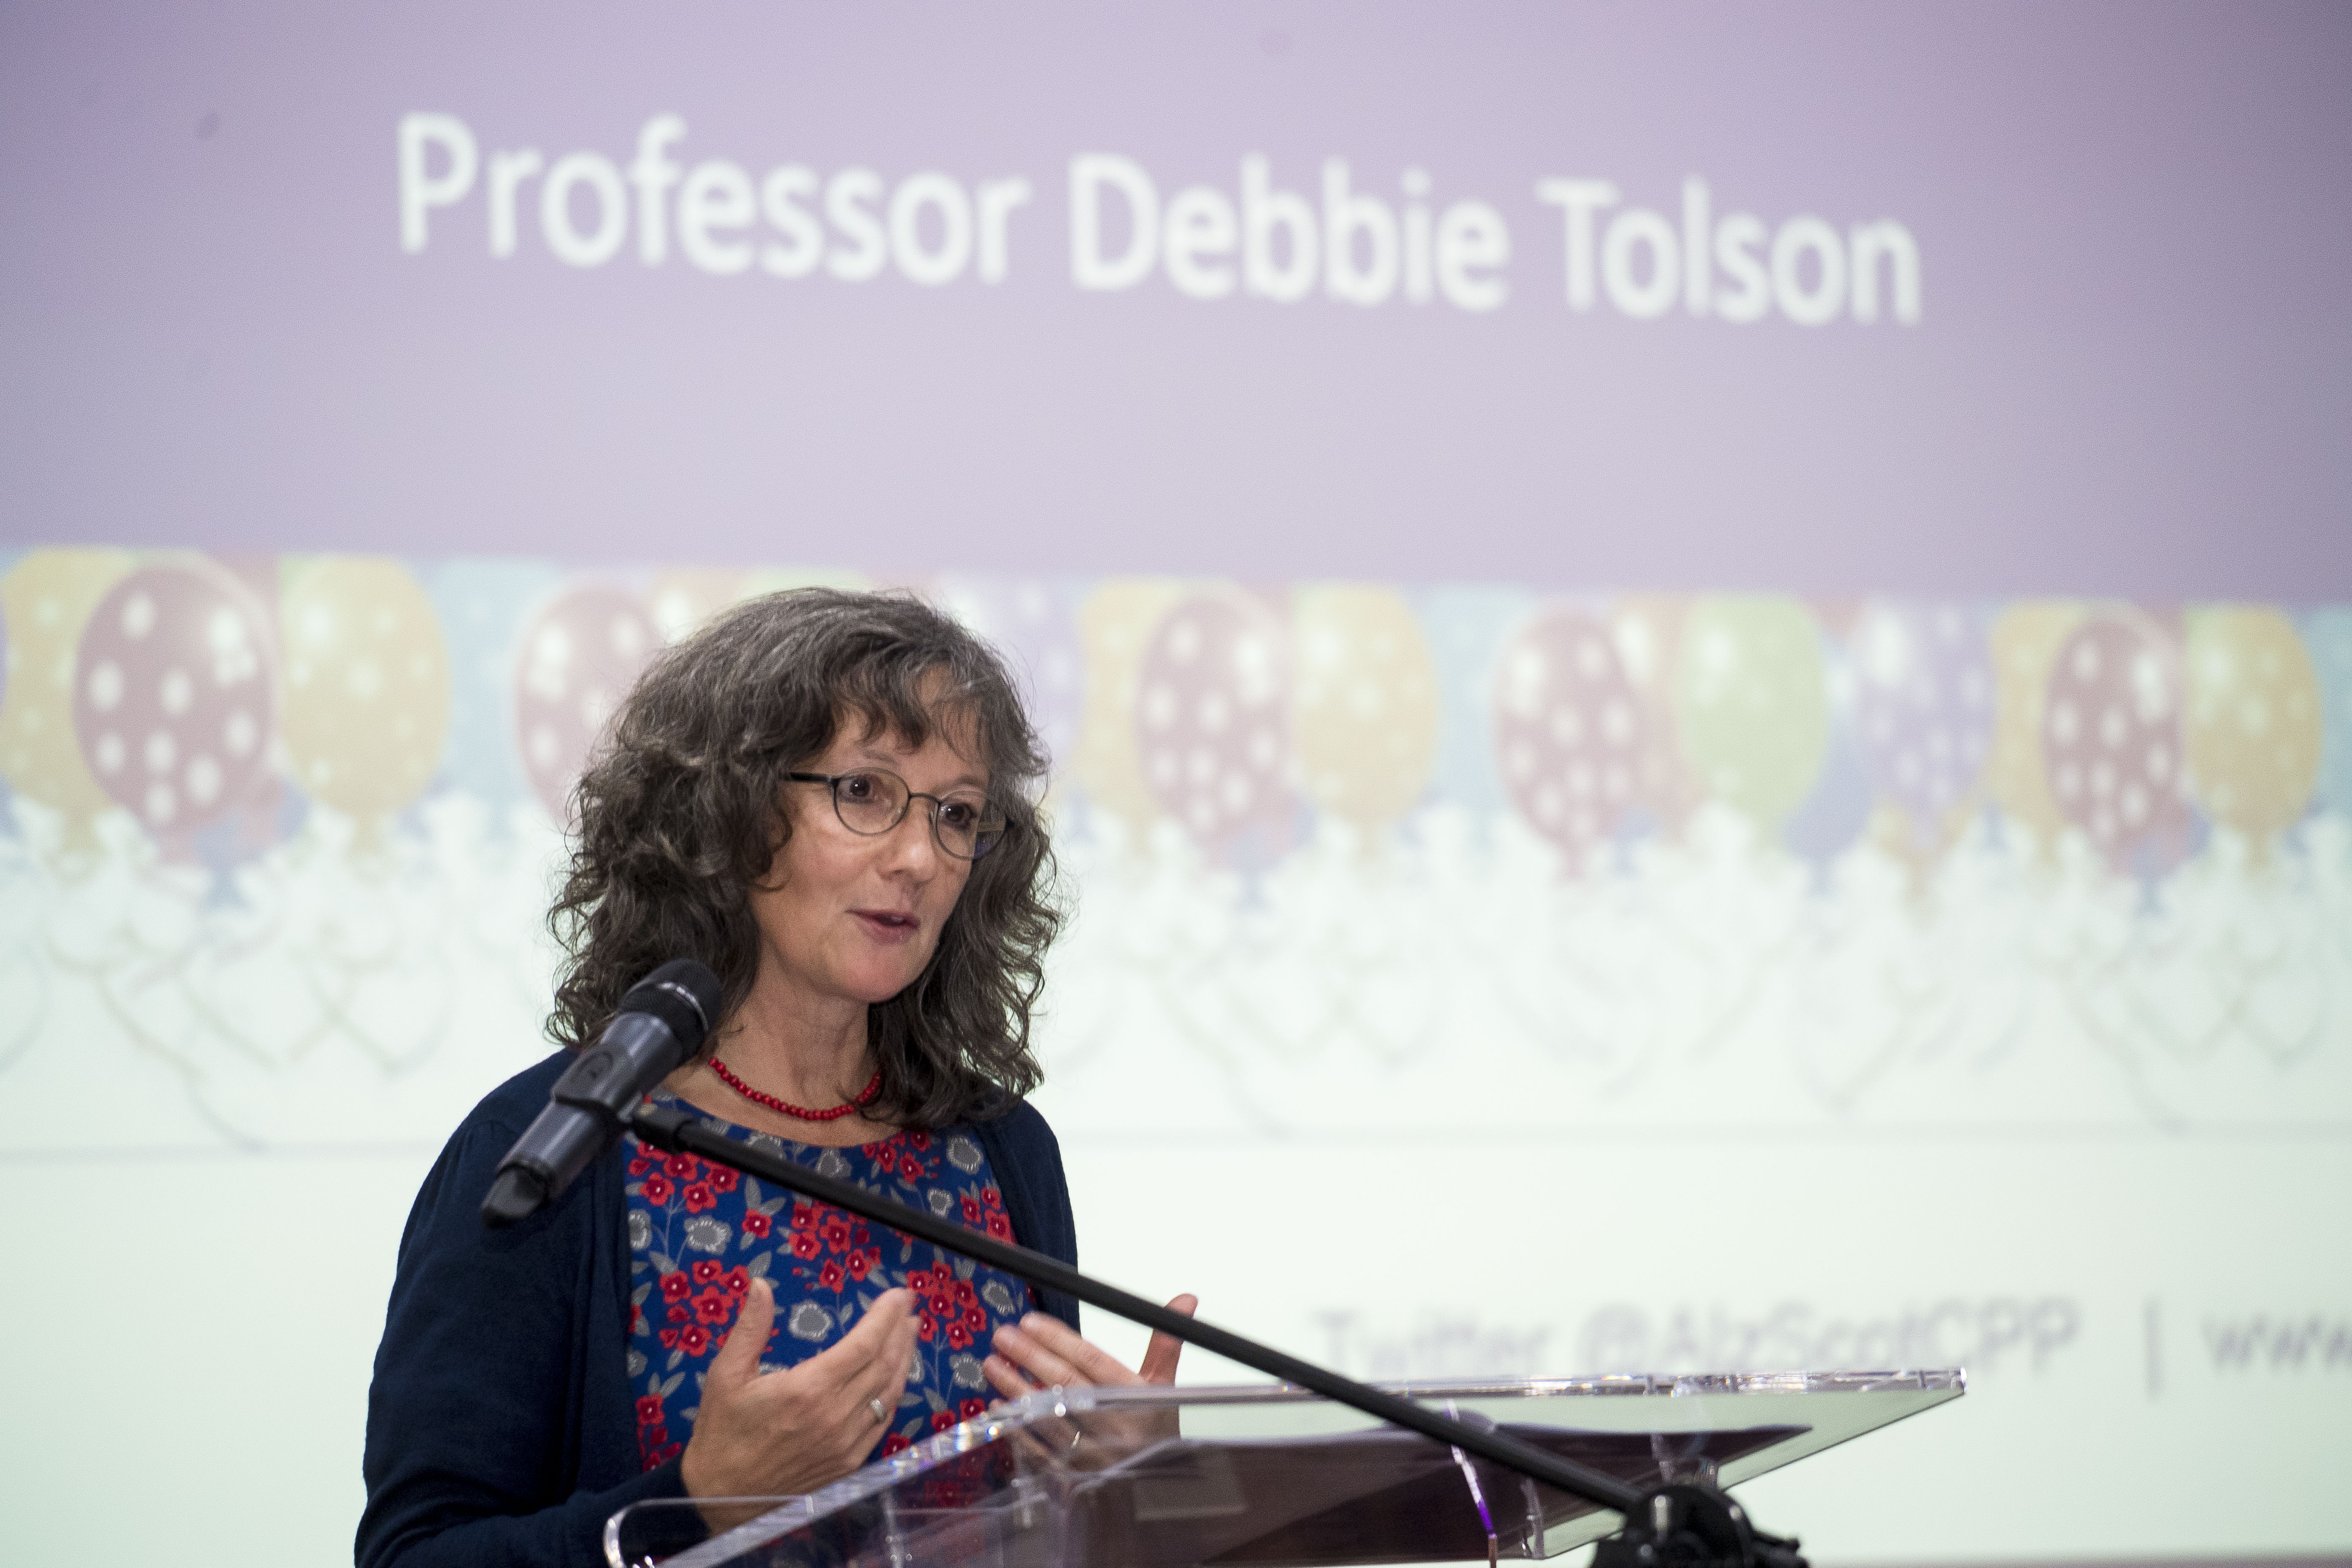 Professor Tolson speaking at a podium